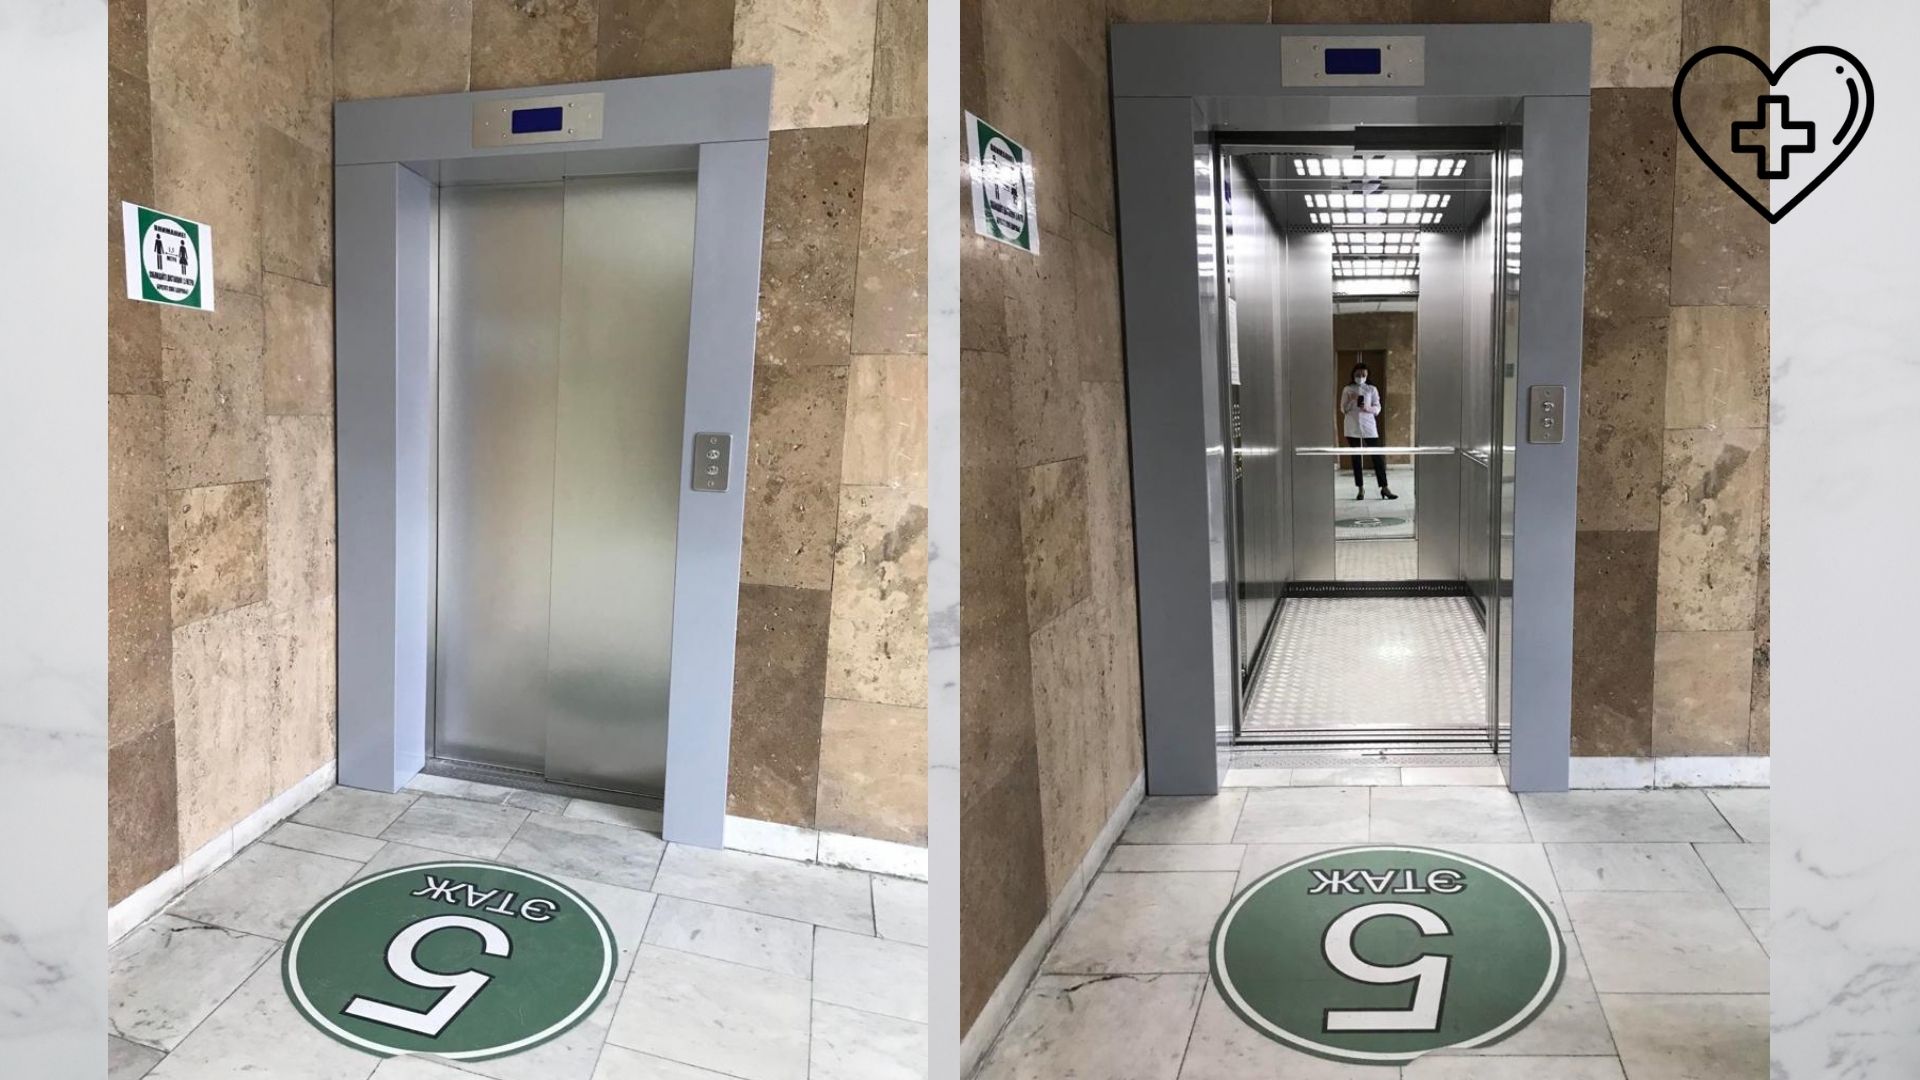 Новый грузопассажирский лифт установлен в Клиническом диагностическом центре (КДЦ)  на улице Горького в Нижнем Новгороде